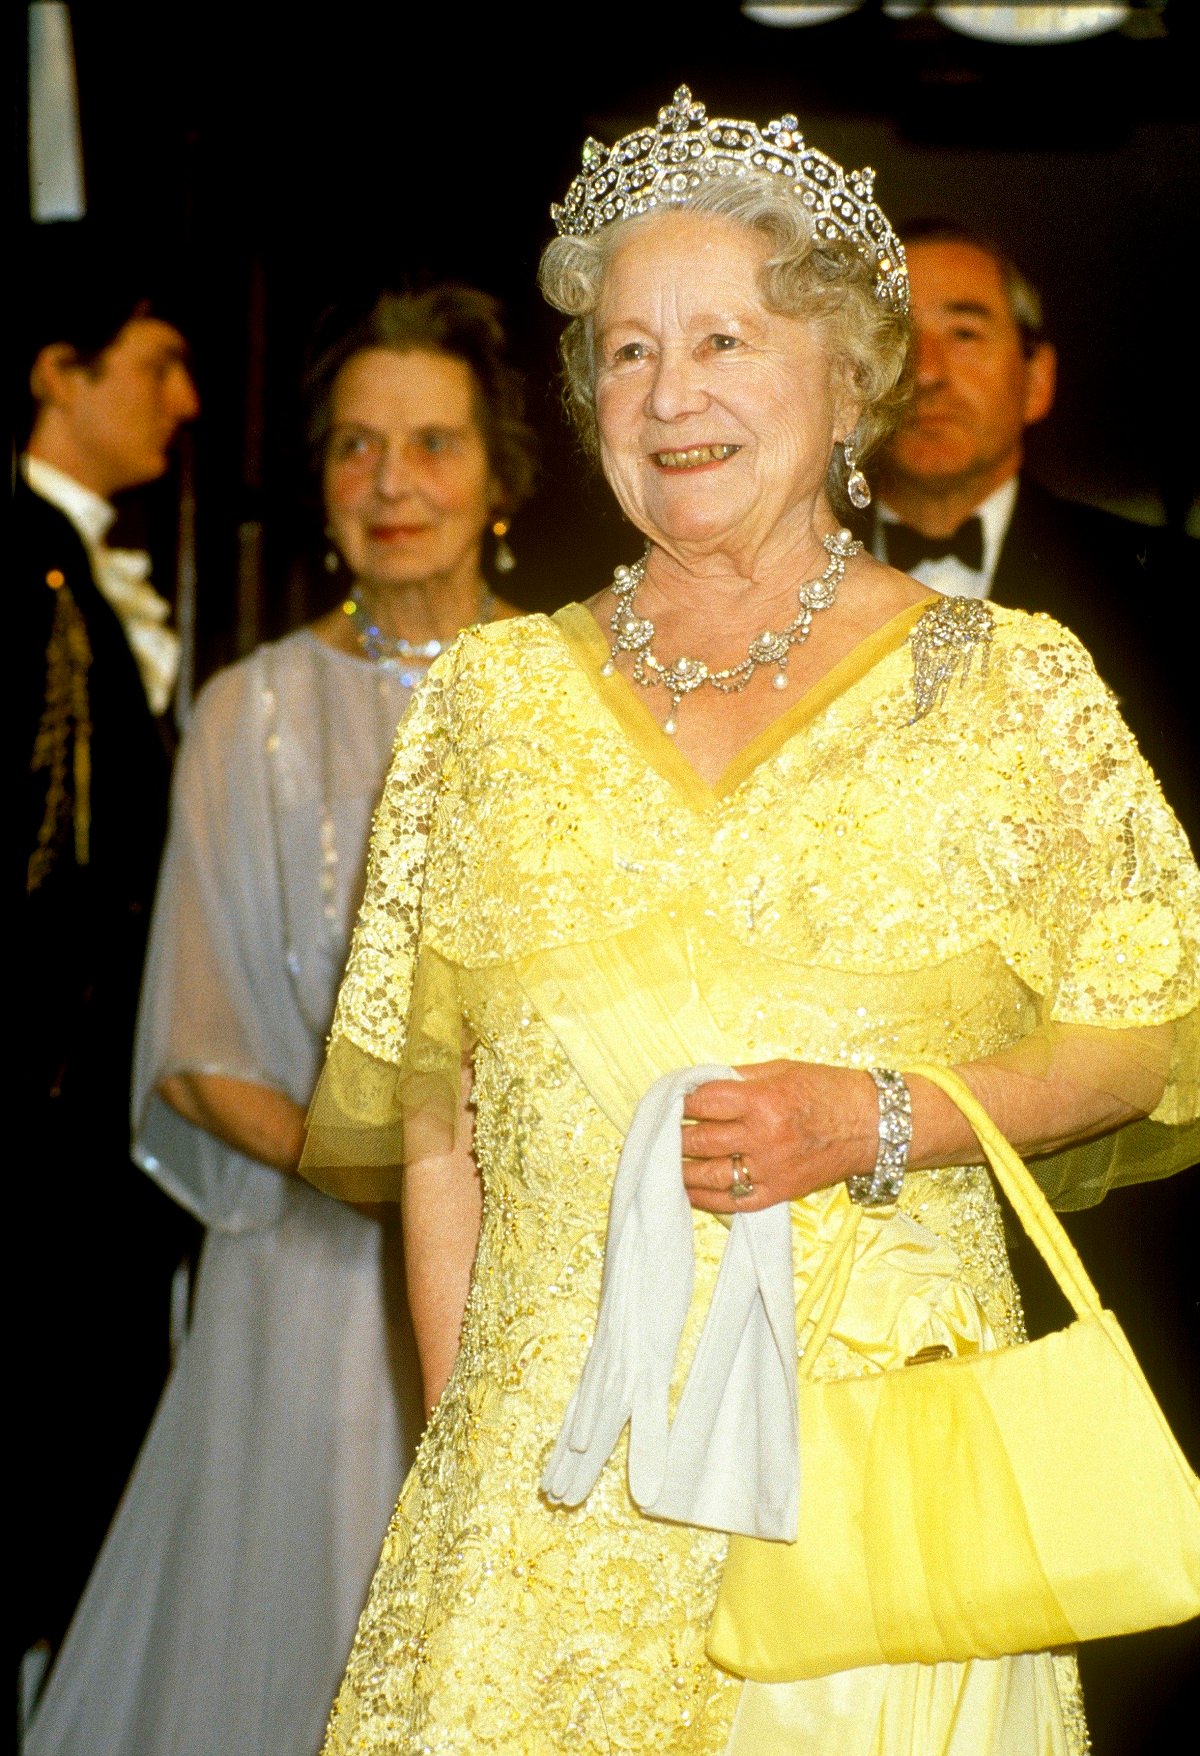 La Reina Madre asistiendo a una cena de recepción (alrededor de 1990)